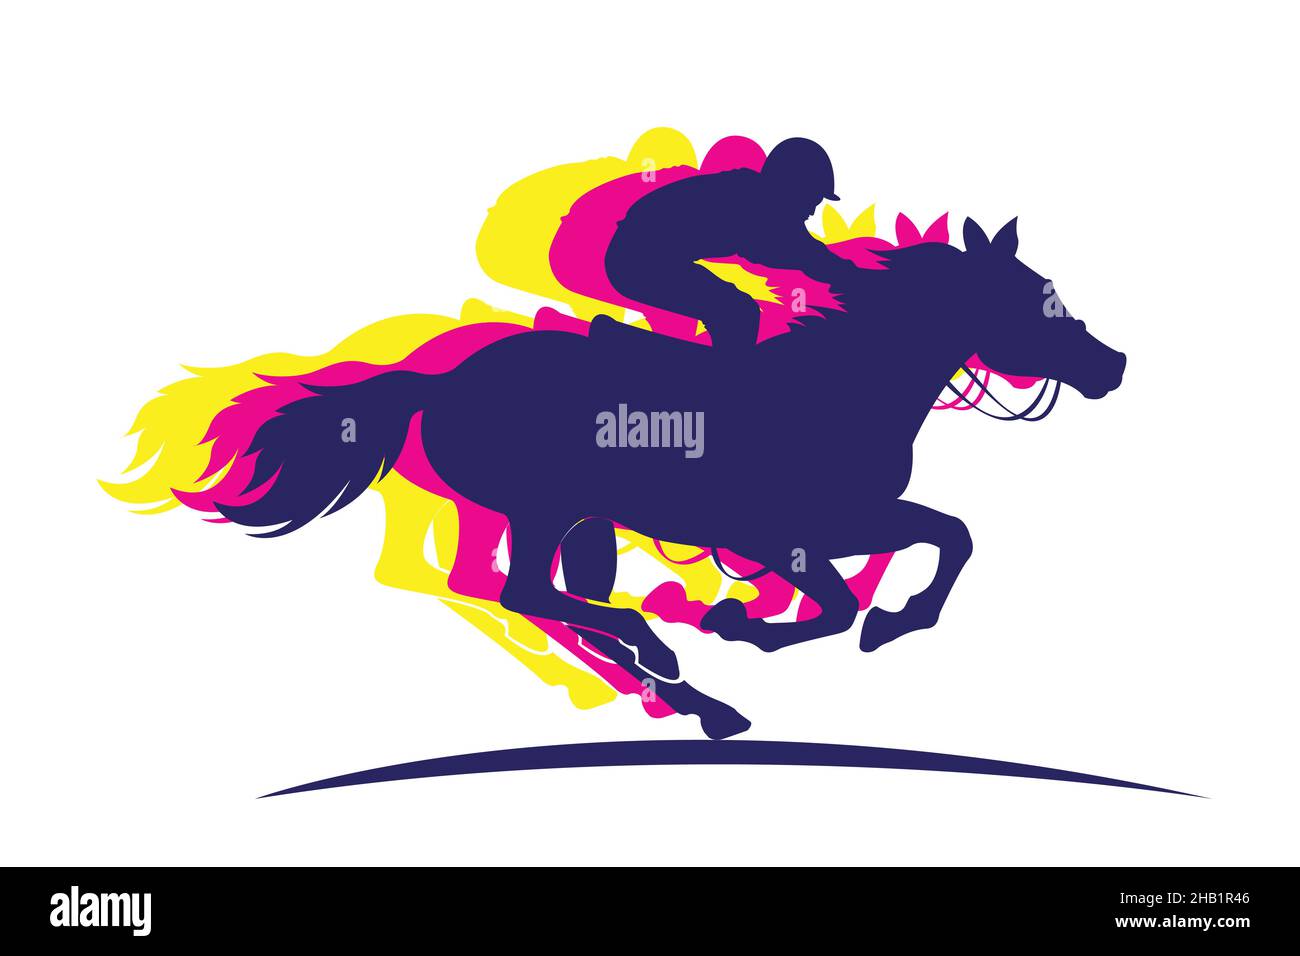 Vektor-Illustration von Rennpferd mit Jockey. Schwarz isoliert Silhouette auf hellgrauem Hintergrund. Logo des Reitwettbewerbs. Stock Vektor